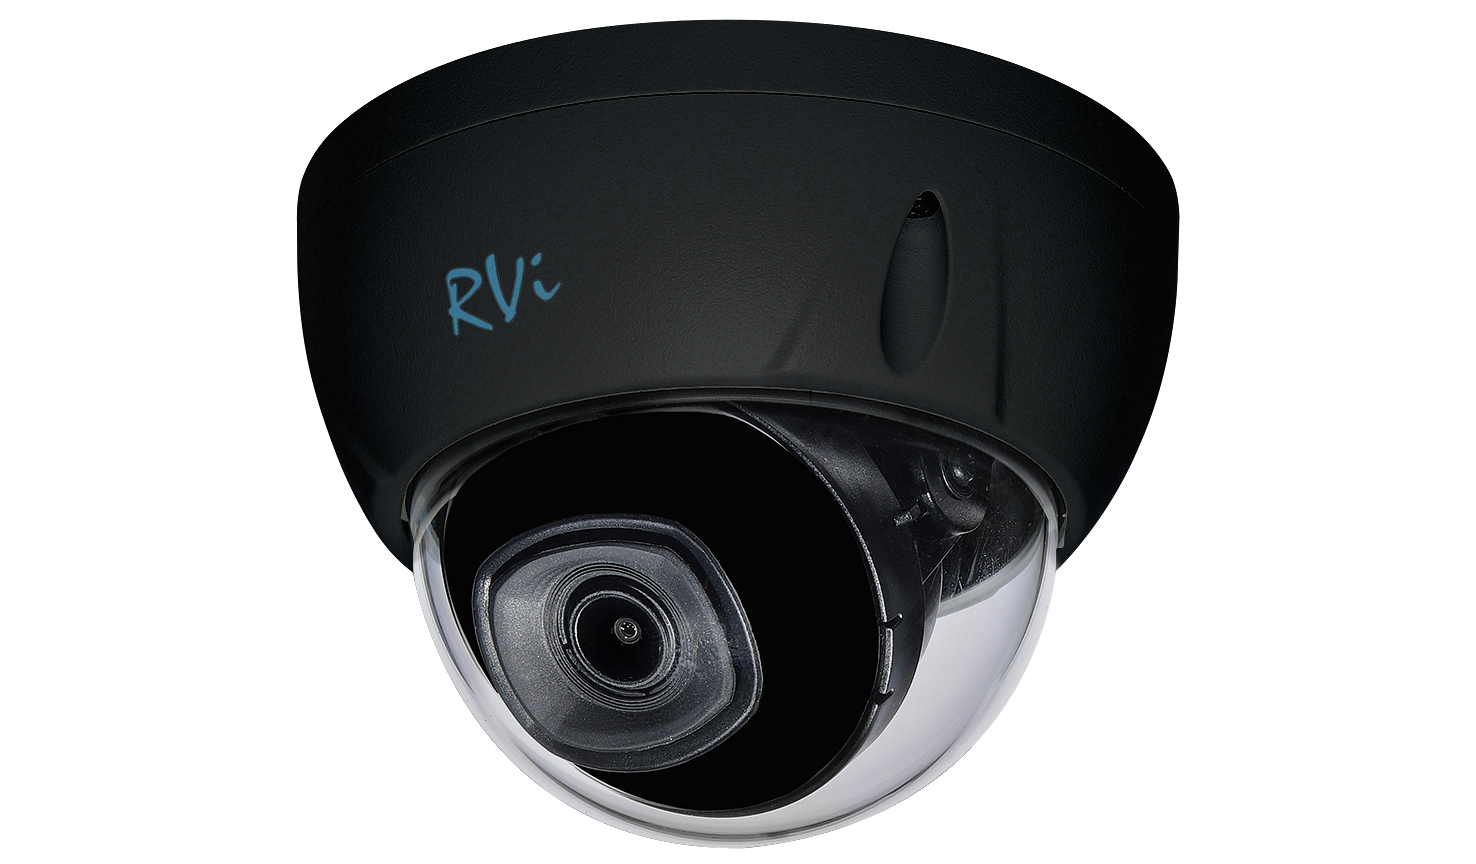 RVi-1NCDX4338 (2.8) black: Видеокамера IP купольная